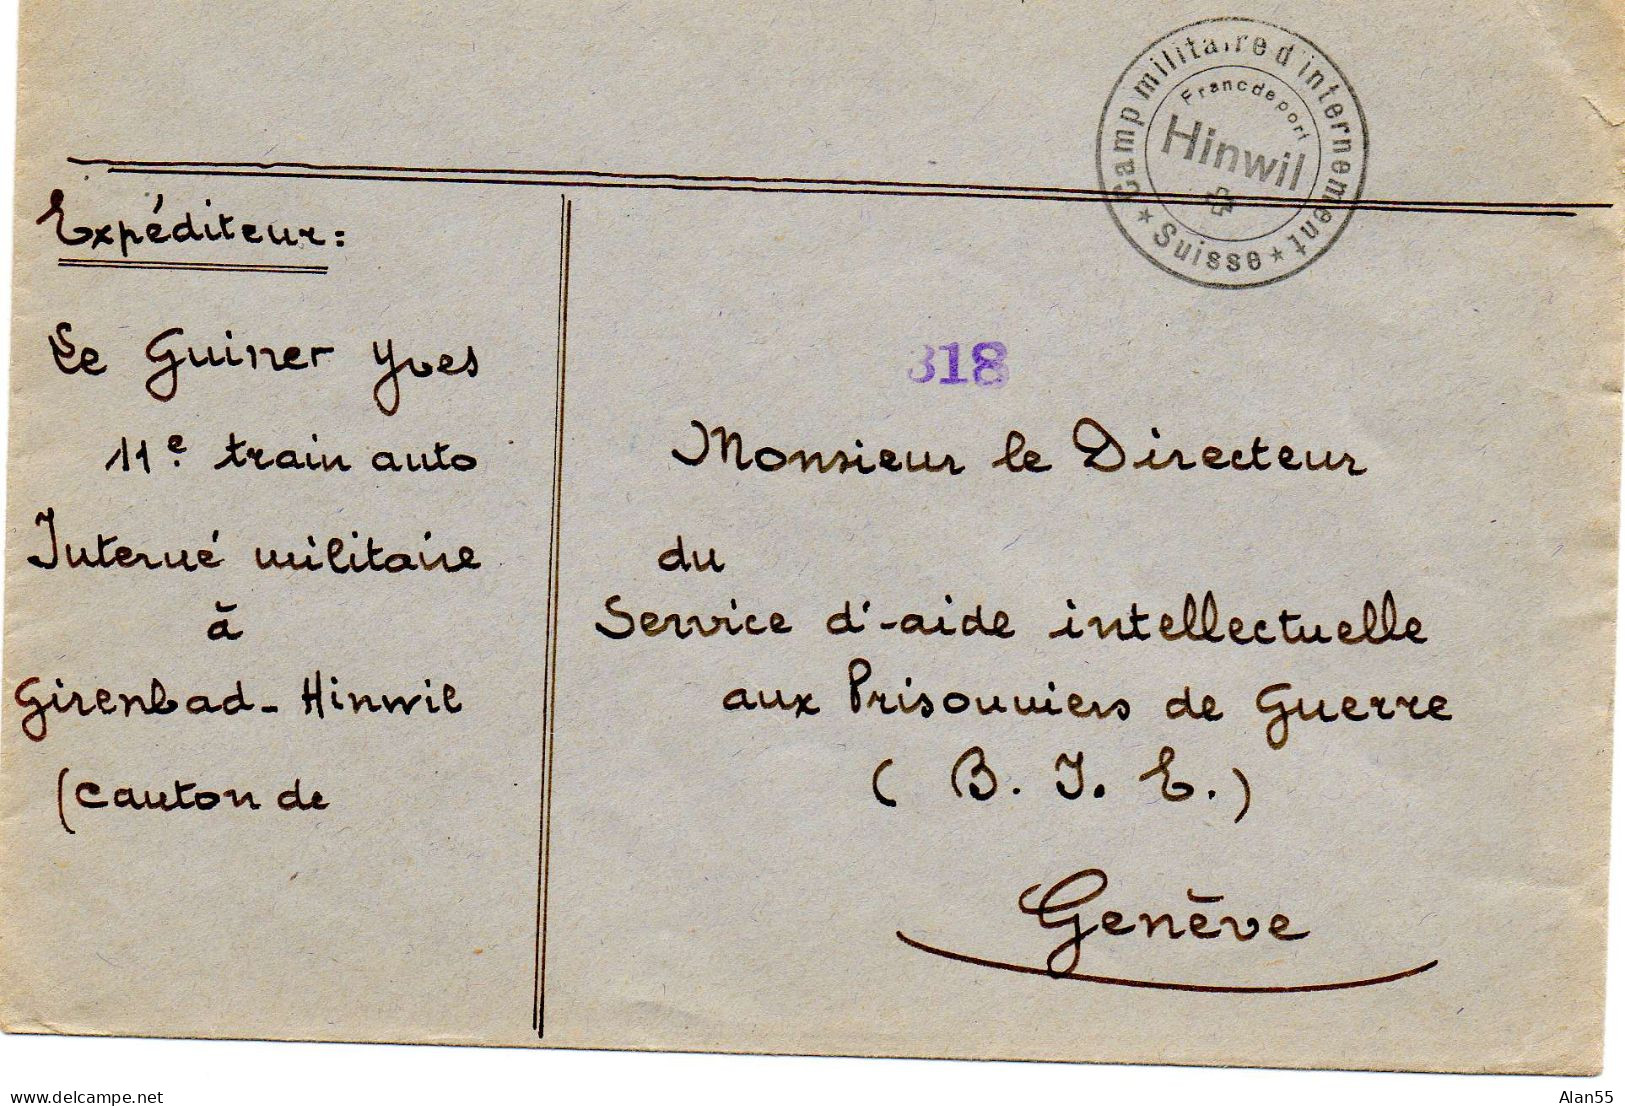 SUISSE. 1940.  FRANC DE PORT. INTERNE MILITAIRE AU CAMP DE HINWIL - Documents